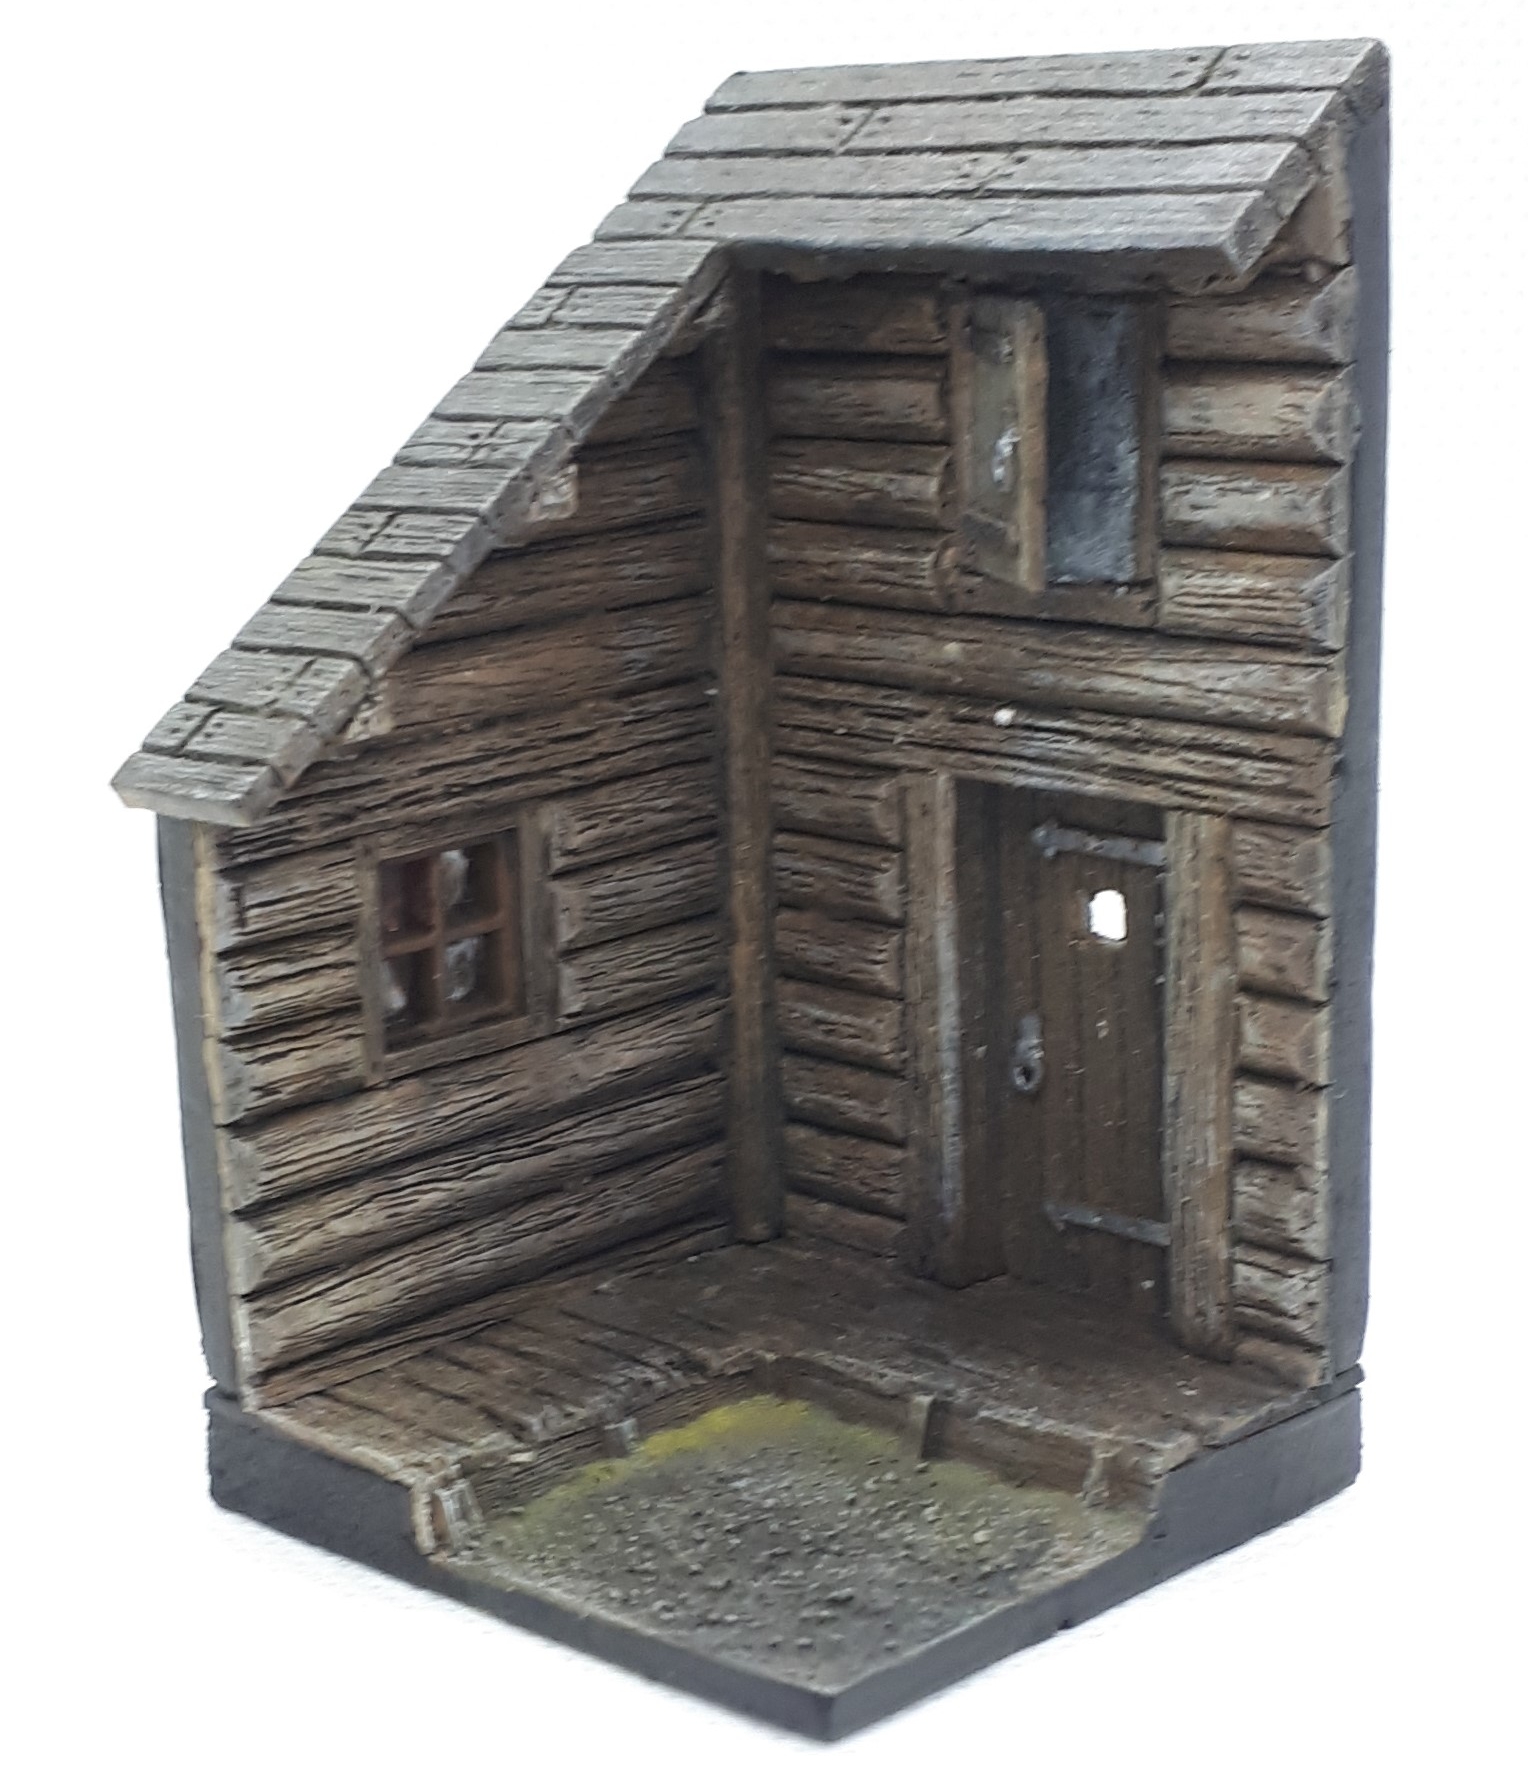 "Woodhouse" vignette base (4x4cm)